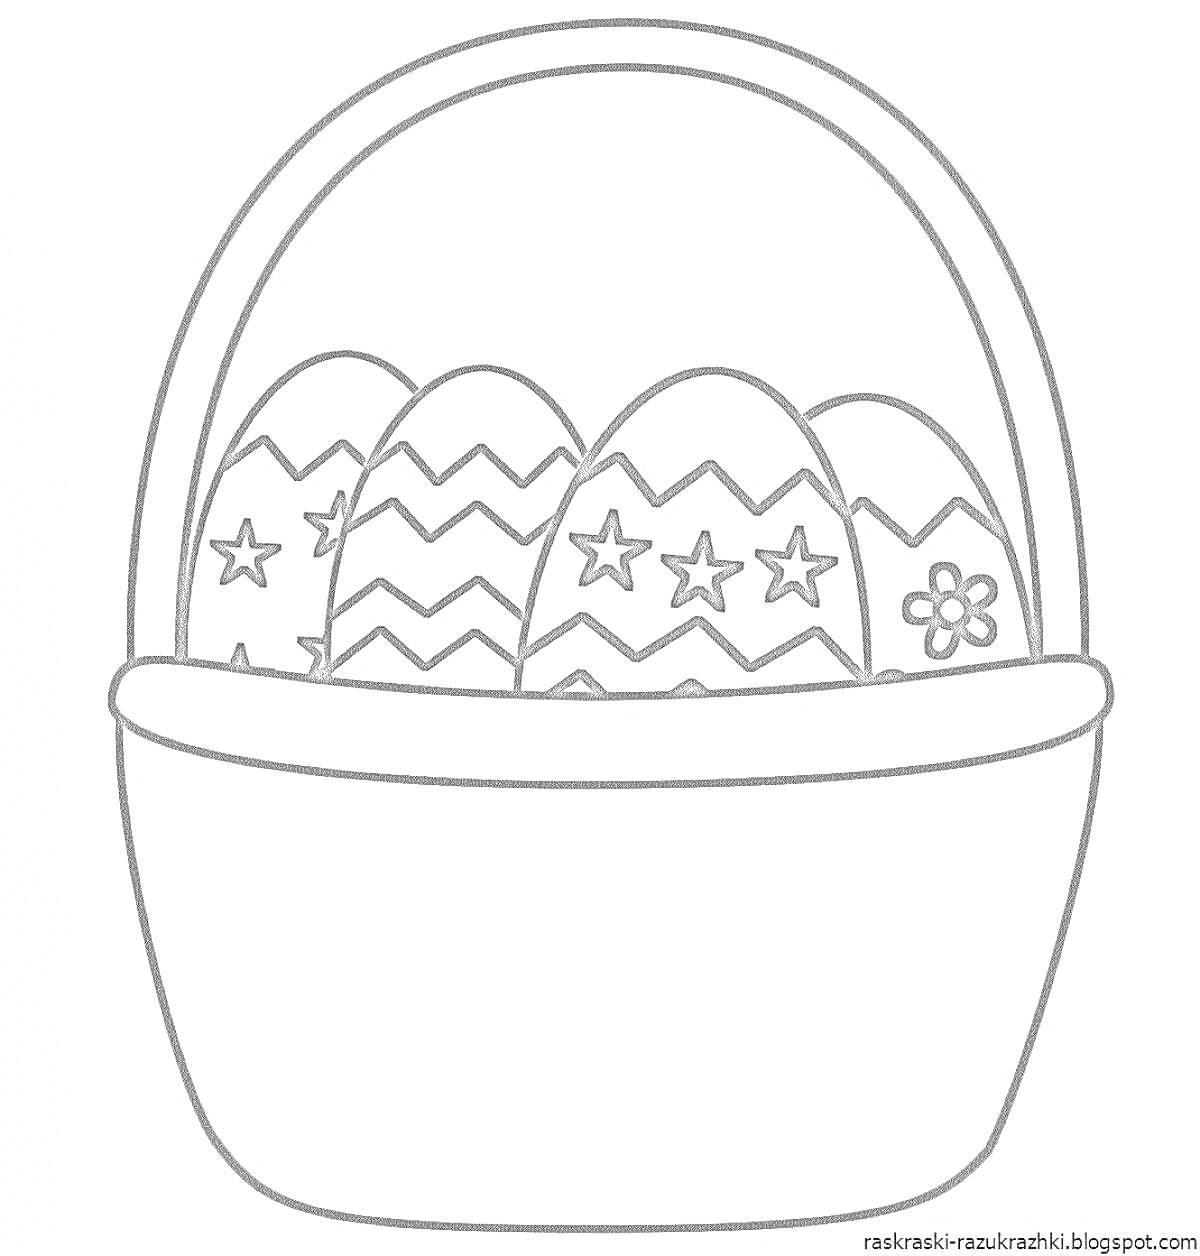 Раскраска Пасхальная корзина с пятью яйцами, украшенными звездами, цветами и зигзагами